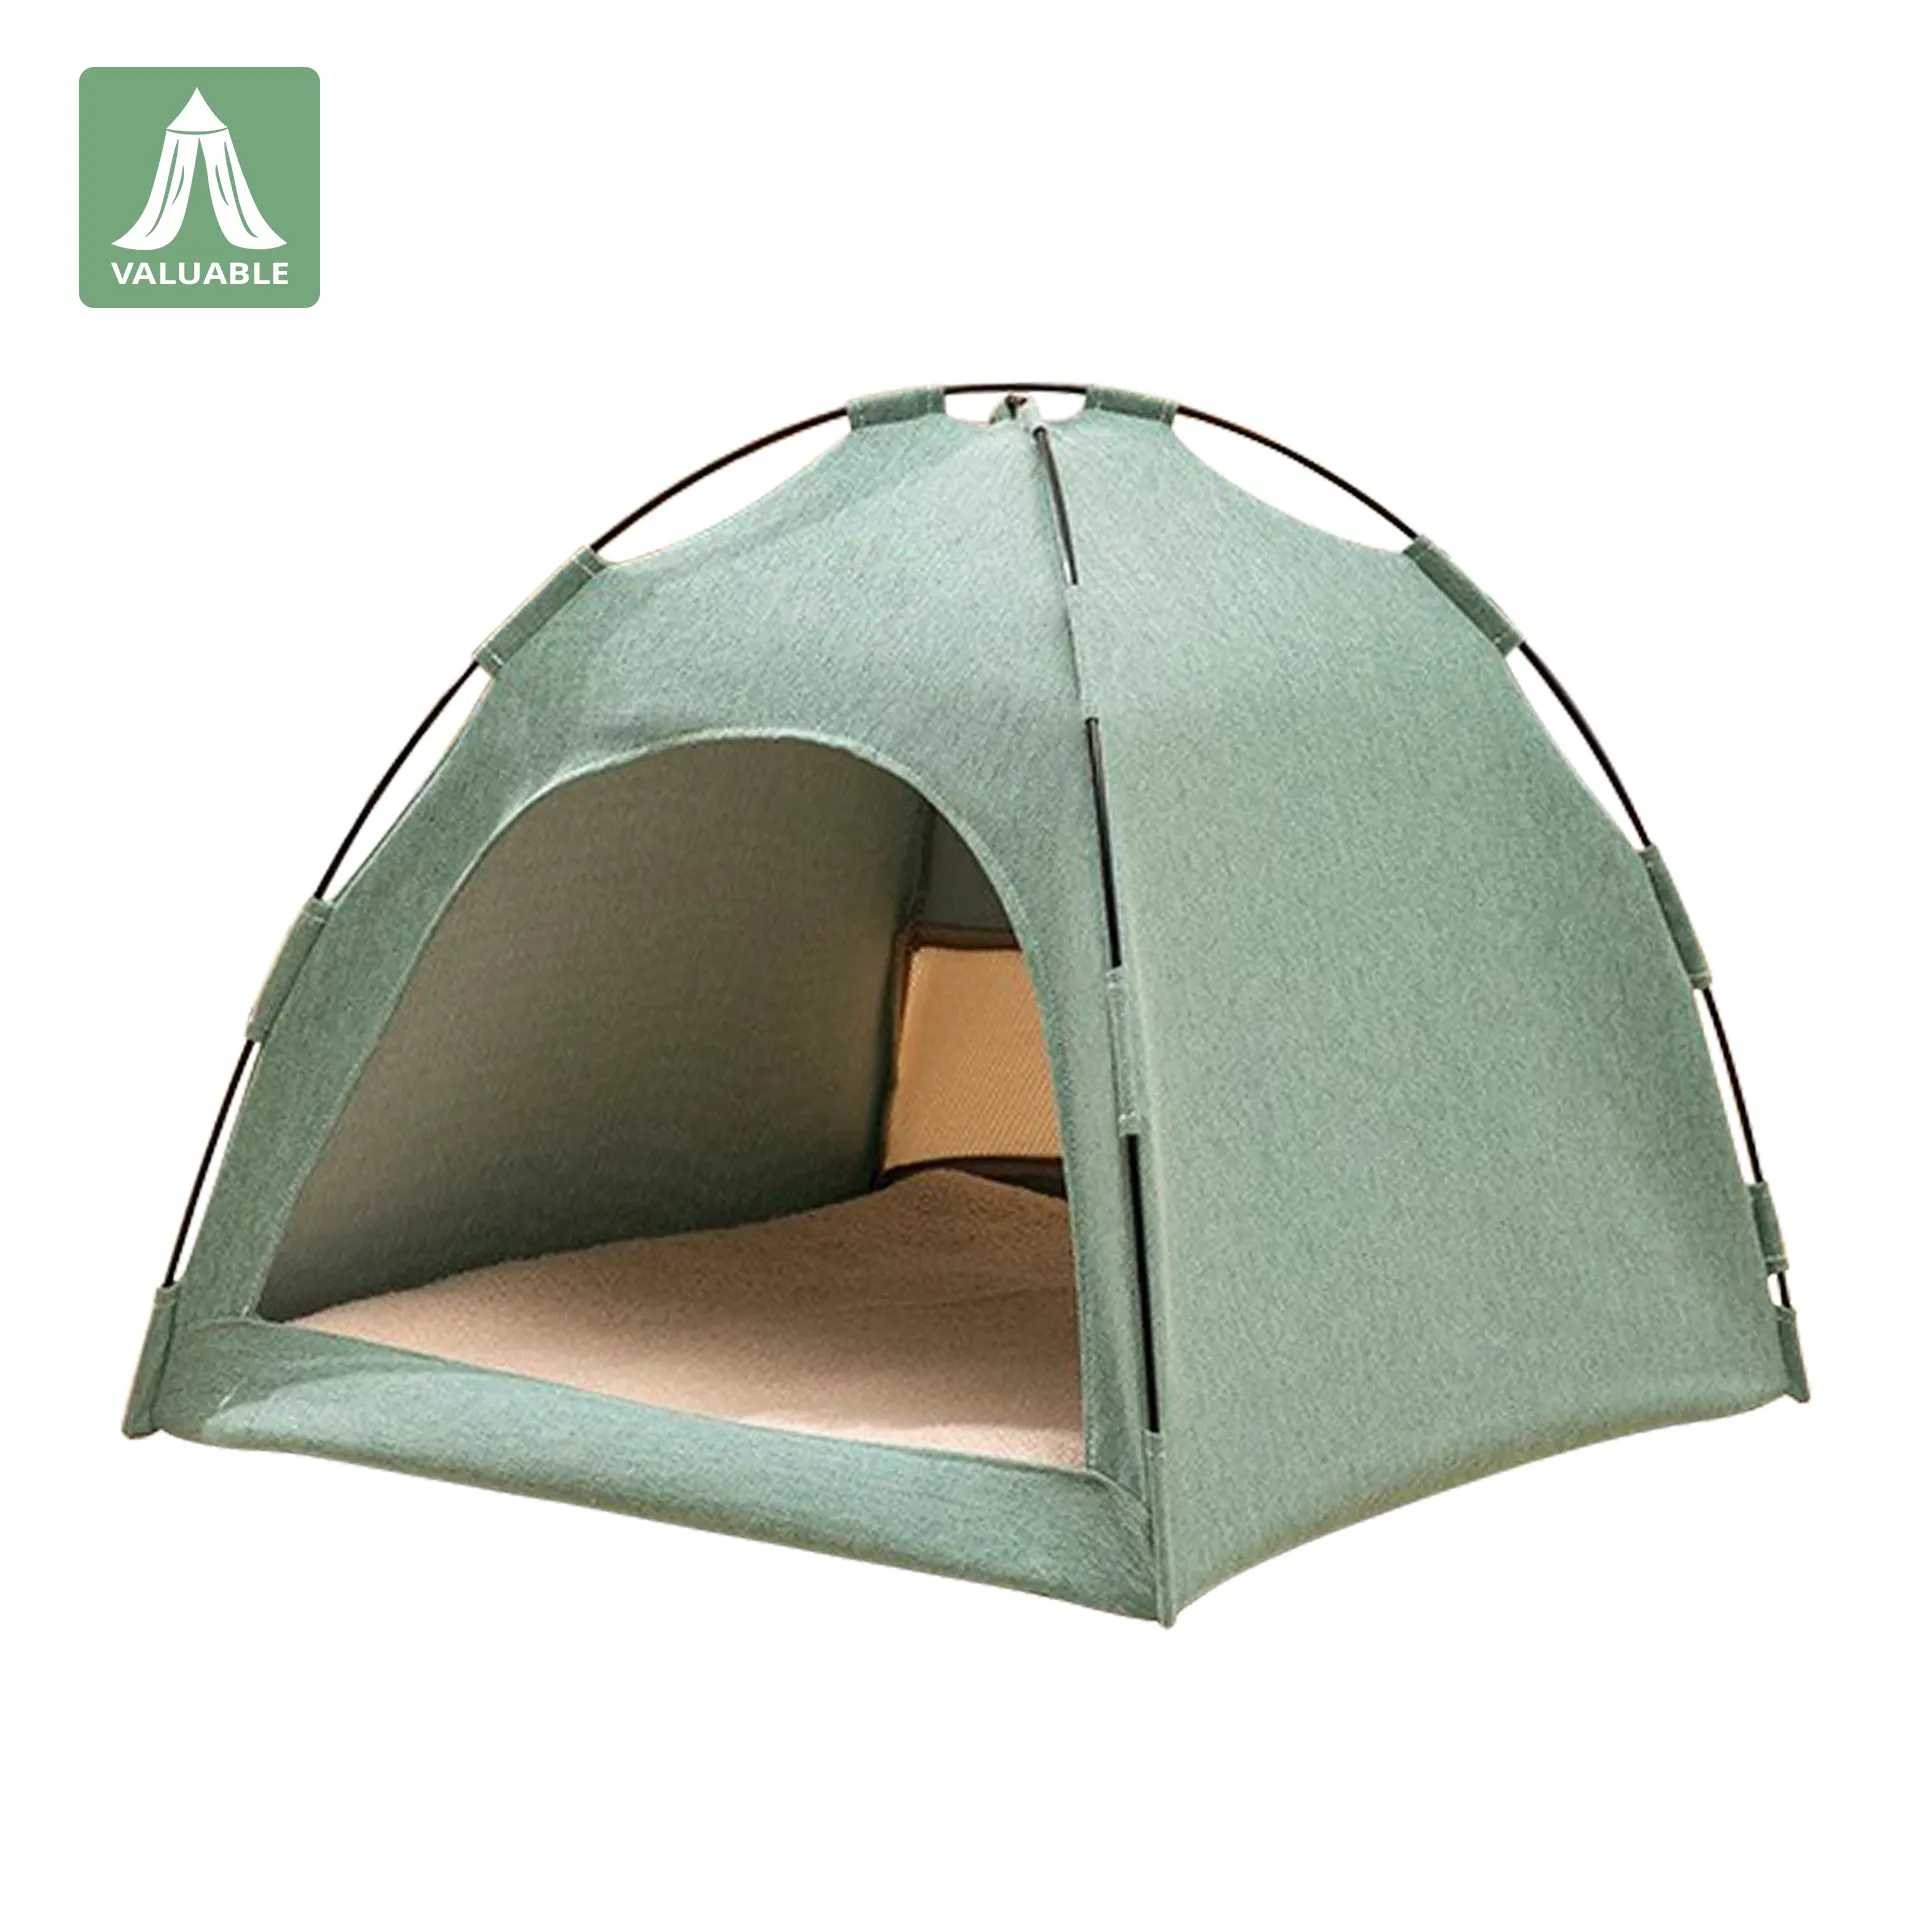 Tenda kabin hewan peliharaan & poliester portabel dengan jaring nyamuk & kanopi tempat tidur untuk anak anjing dan anak kucing untuk berkemah perjalanan penggunaan rumah